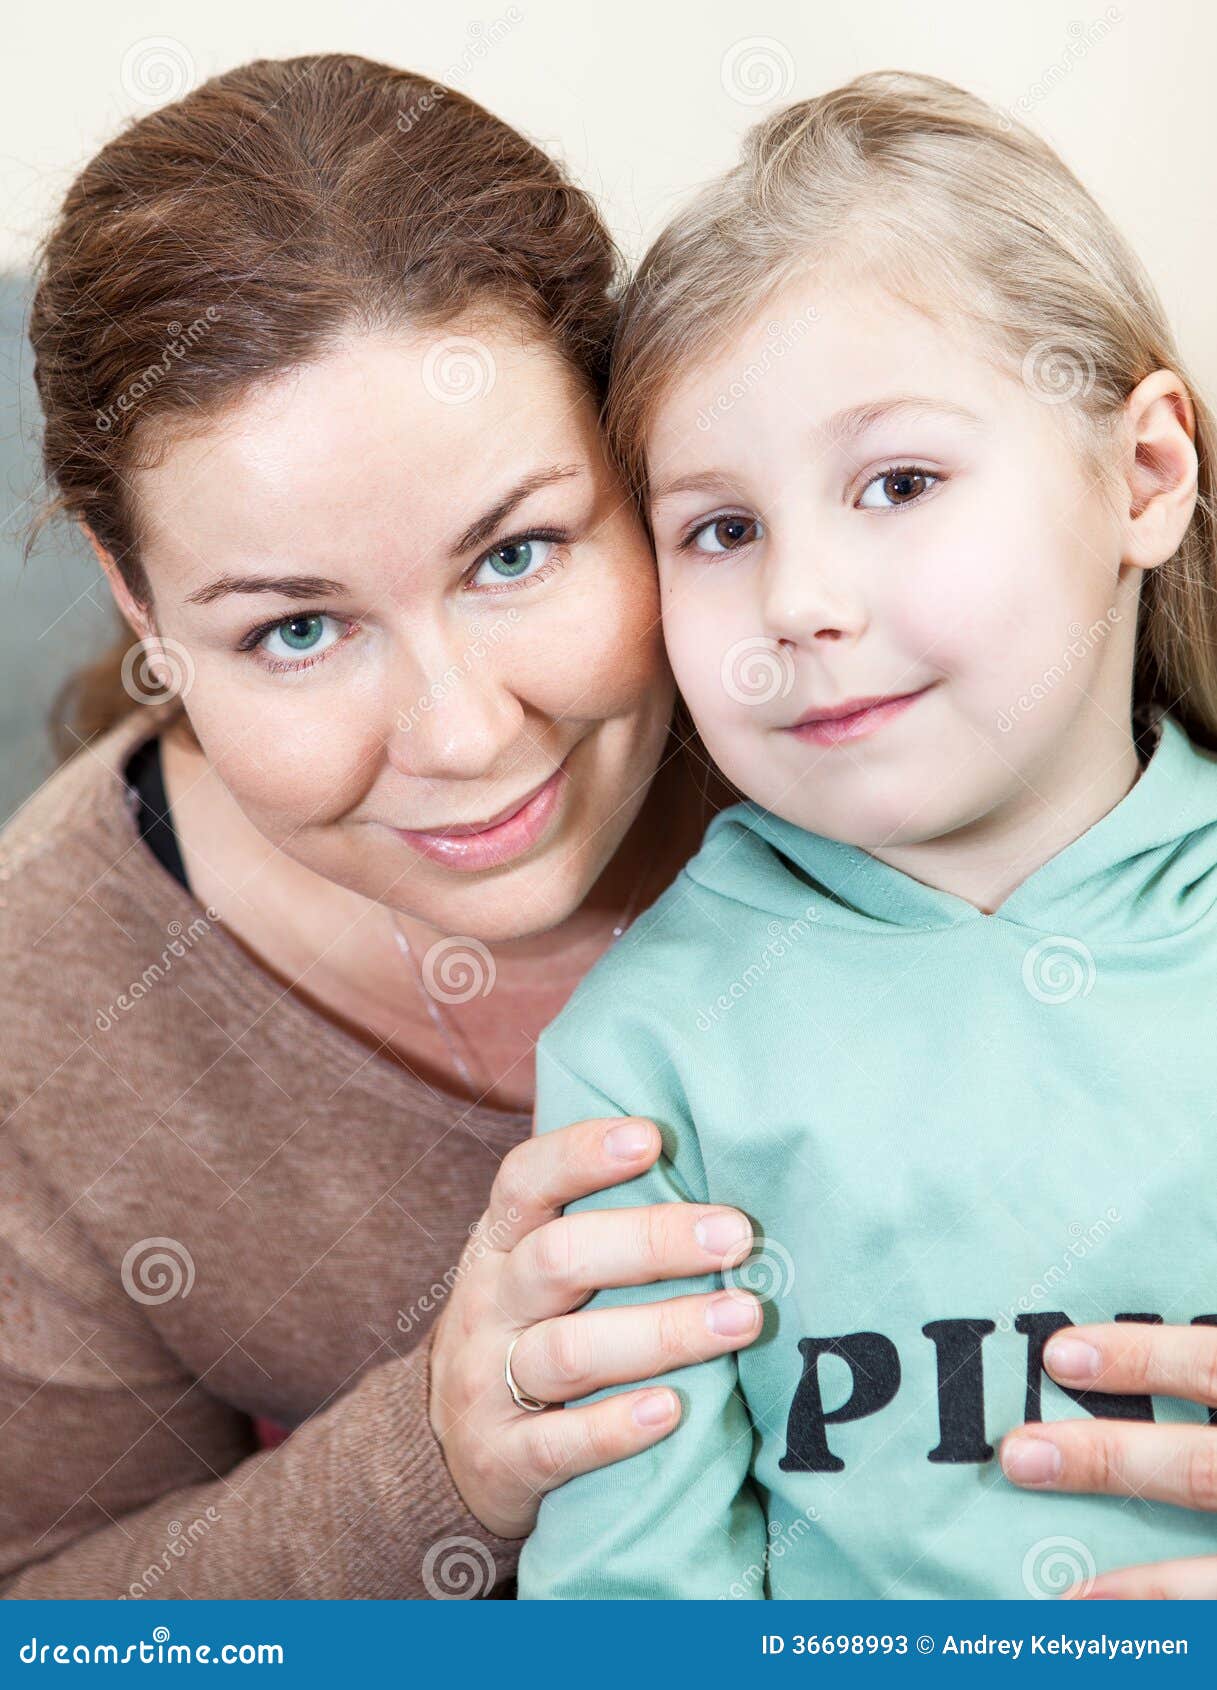 Мать какое лицо. Фотосессия дочь и мама лицо. Мама и дочь с лицом. Мамино лицо. Фото мама с дочкой крупным планом.